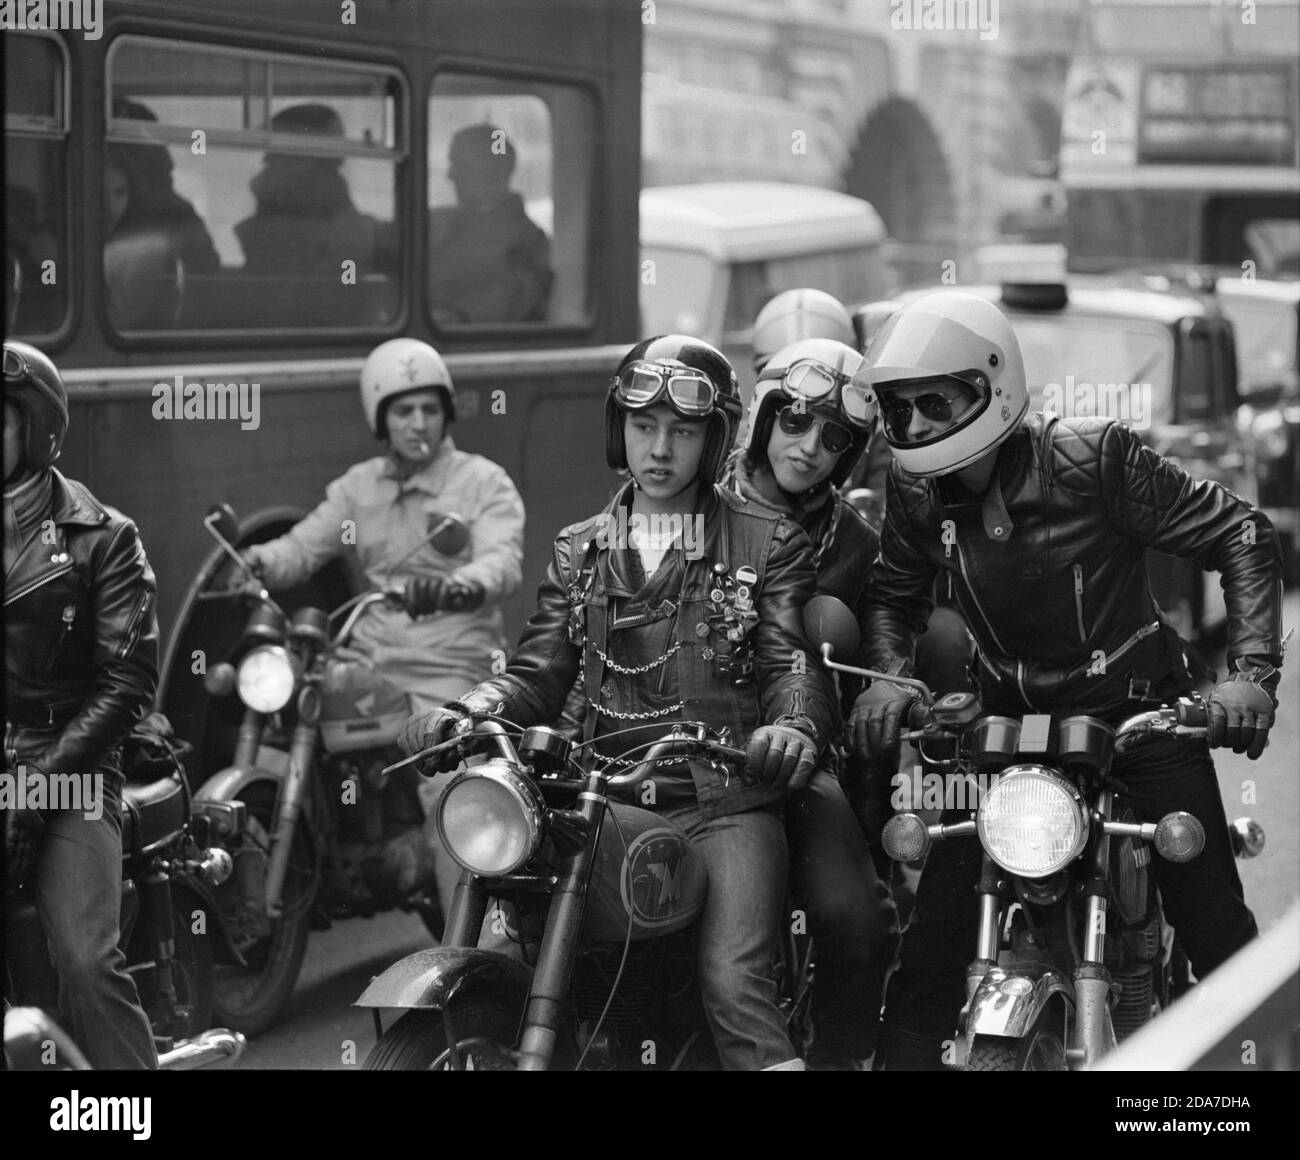 Jugendliche auf Motorrädern, London, England, Februar 1979 Stockfoto